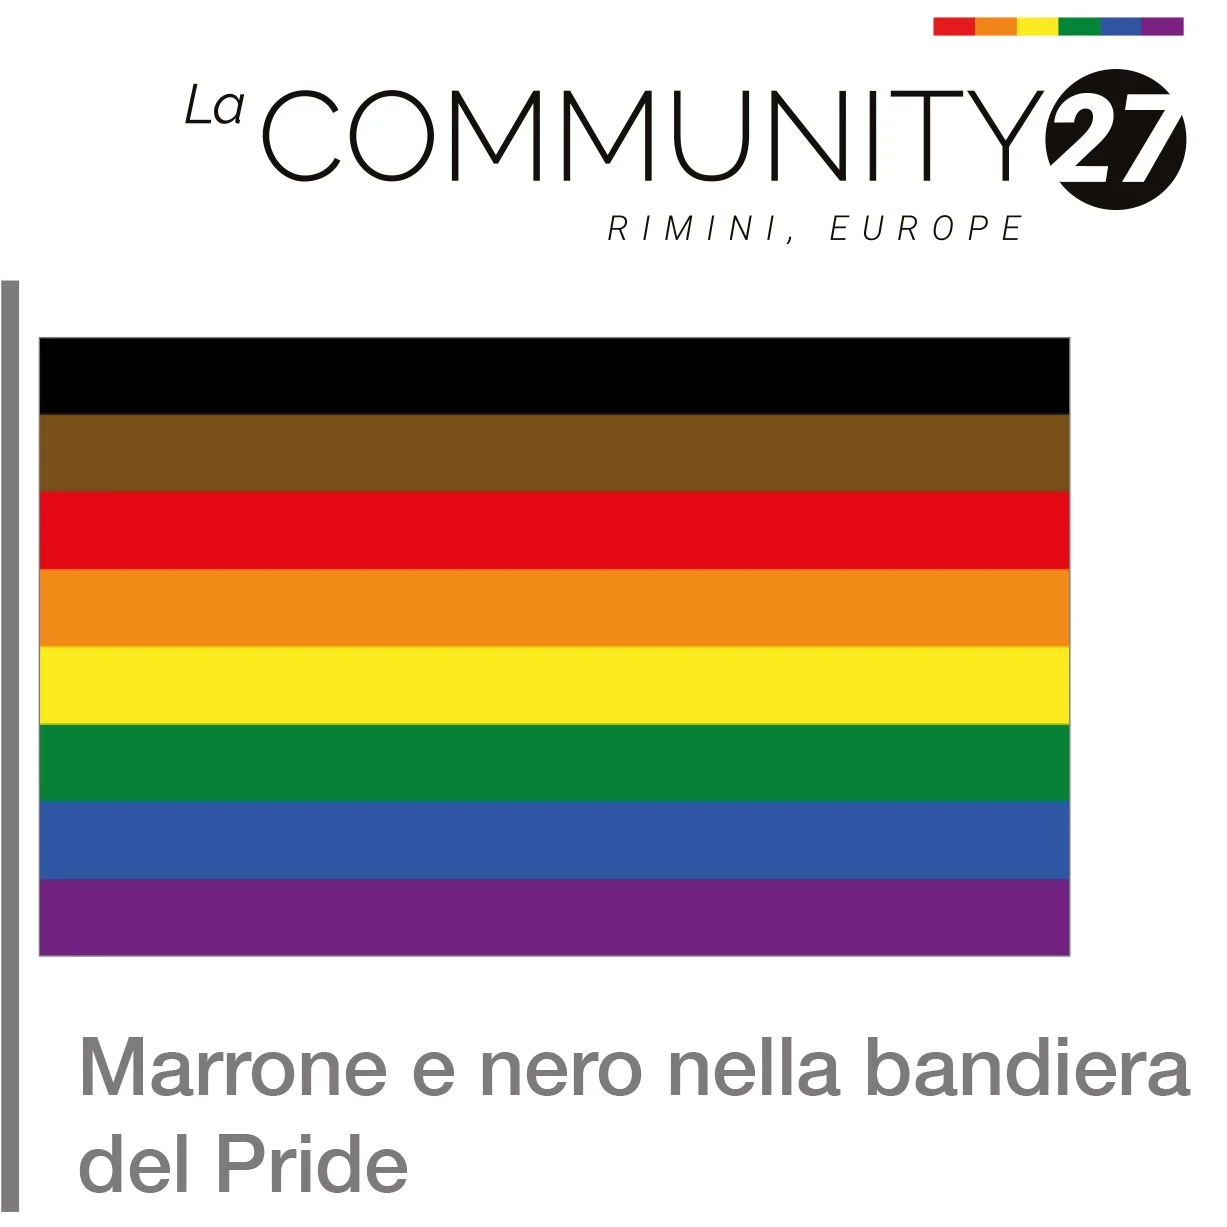 Marrone e nero nella bandiera del Pride - bandiera LGBTQ in uso - La Communty 27